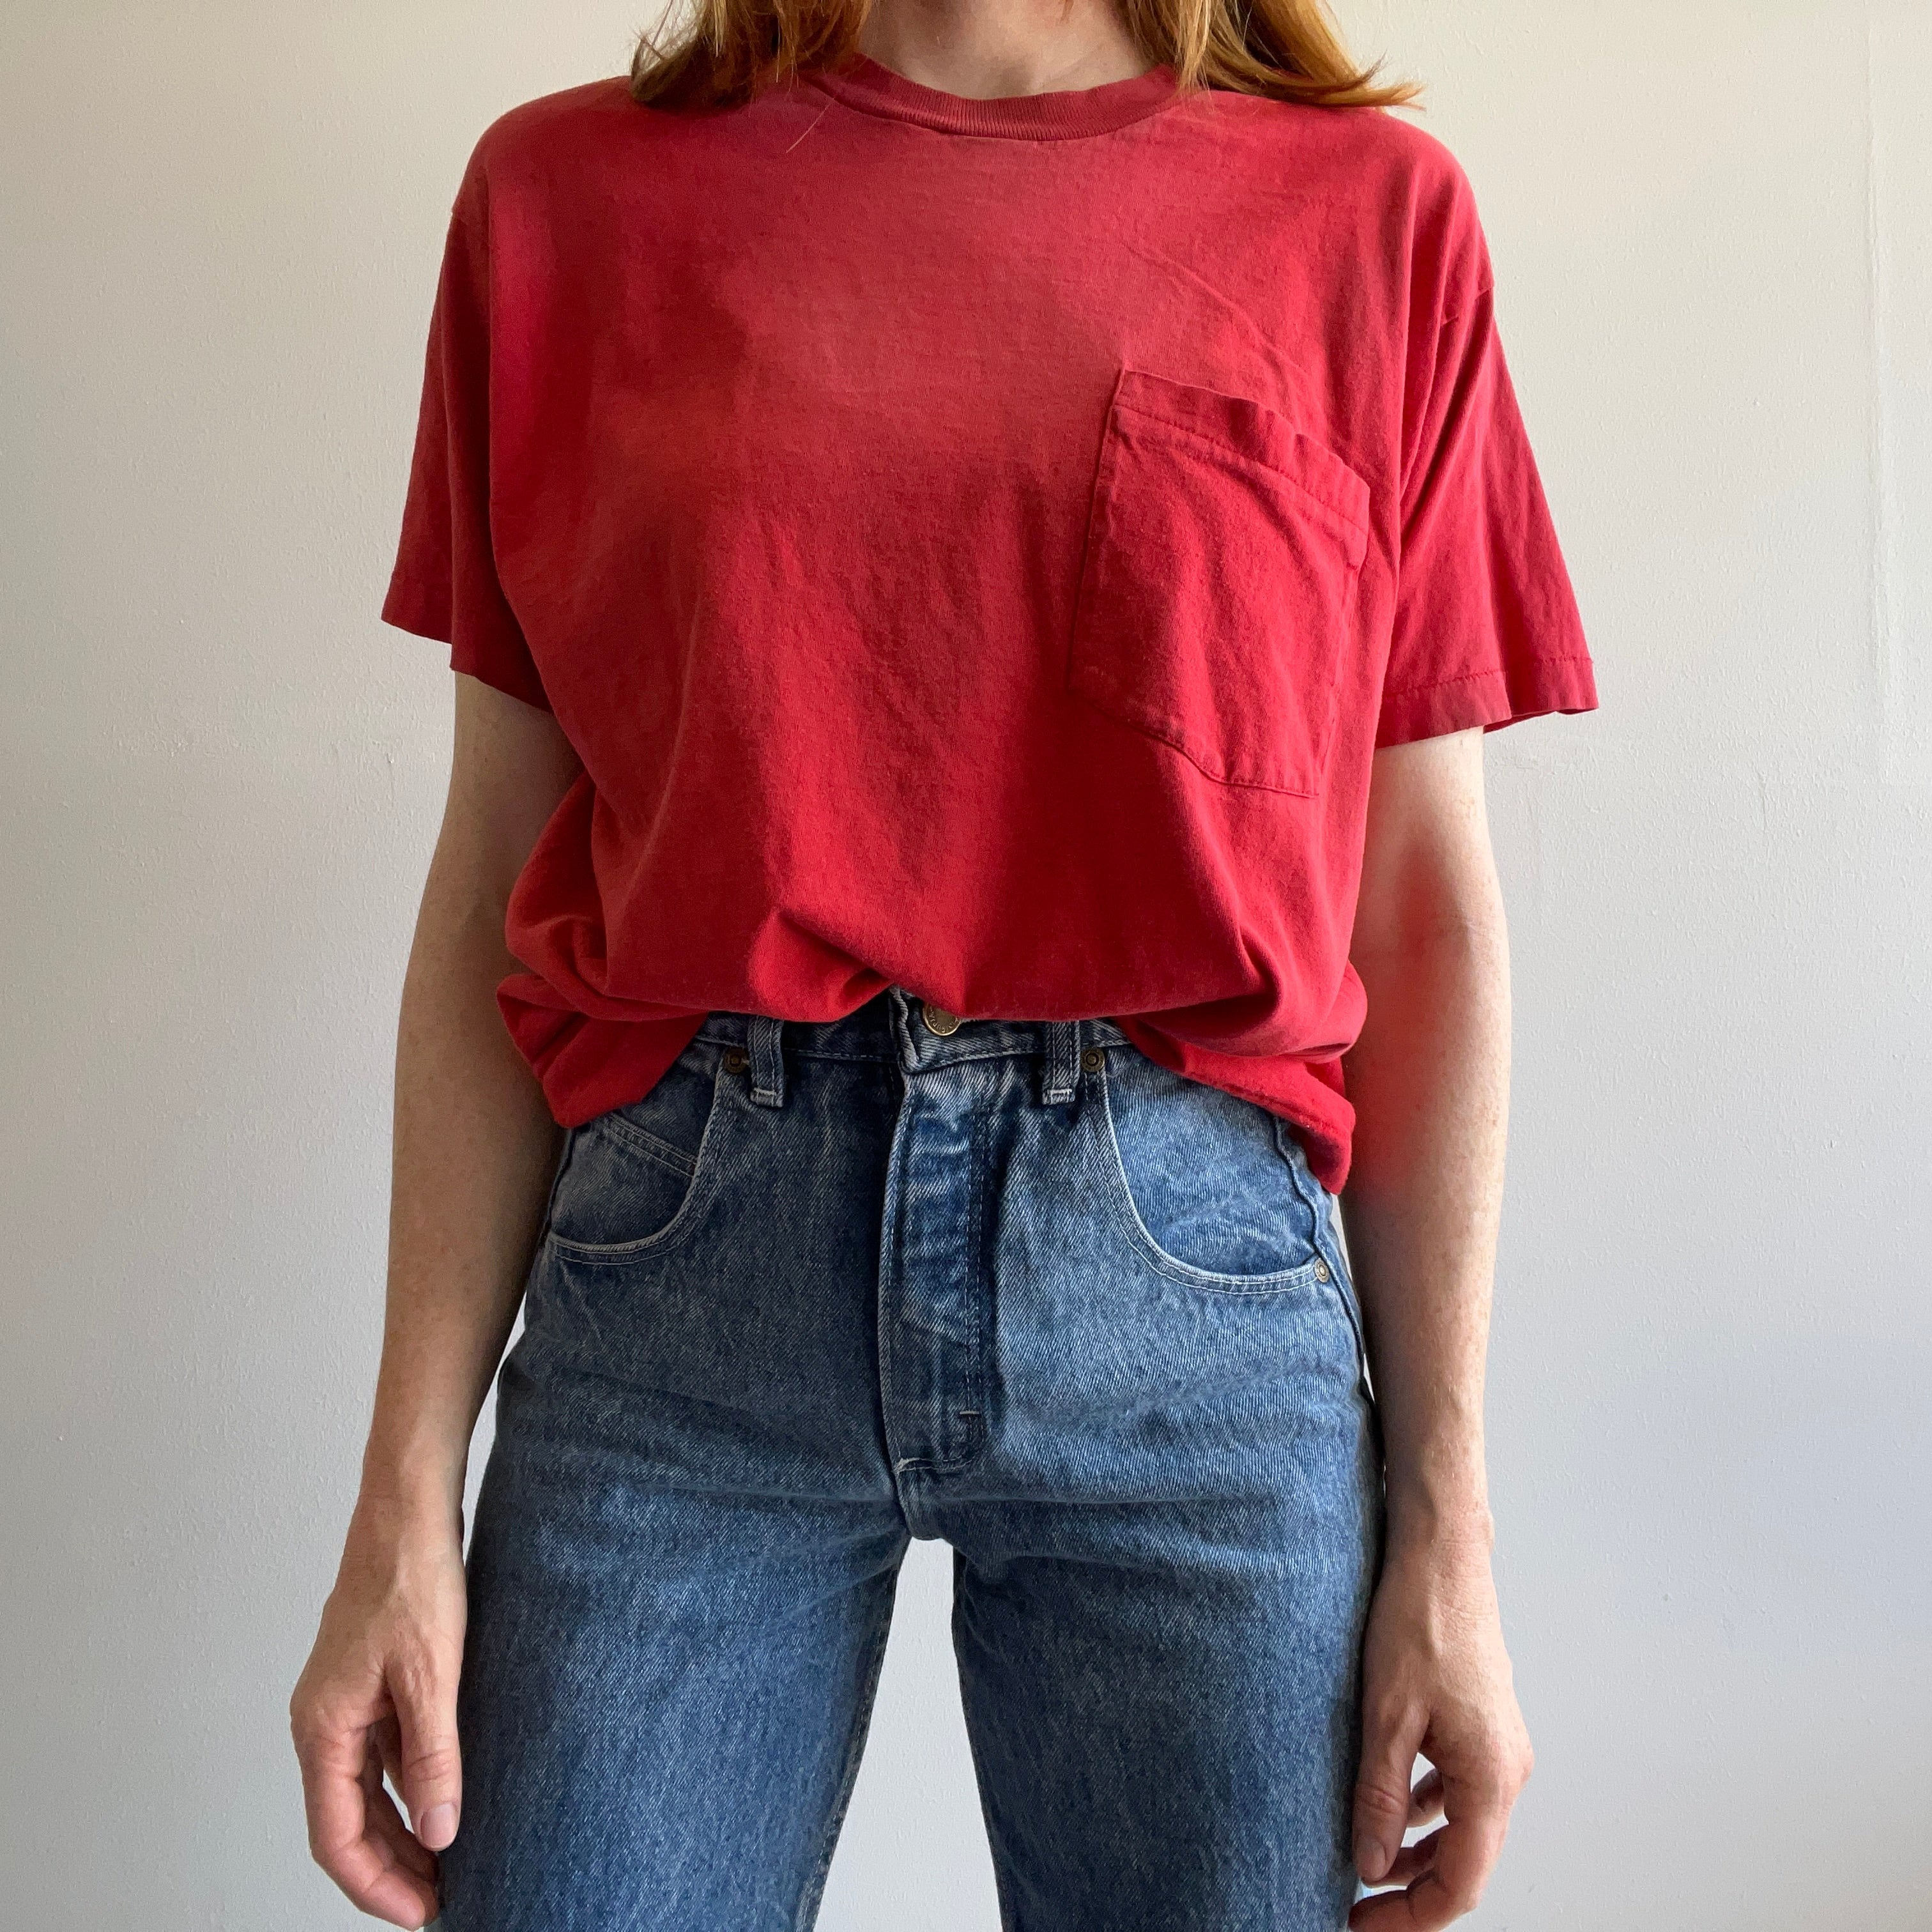 T-shirt de poche en coton rouge vierge GG des années 1980 joliment usé et taché par l'âge